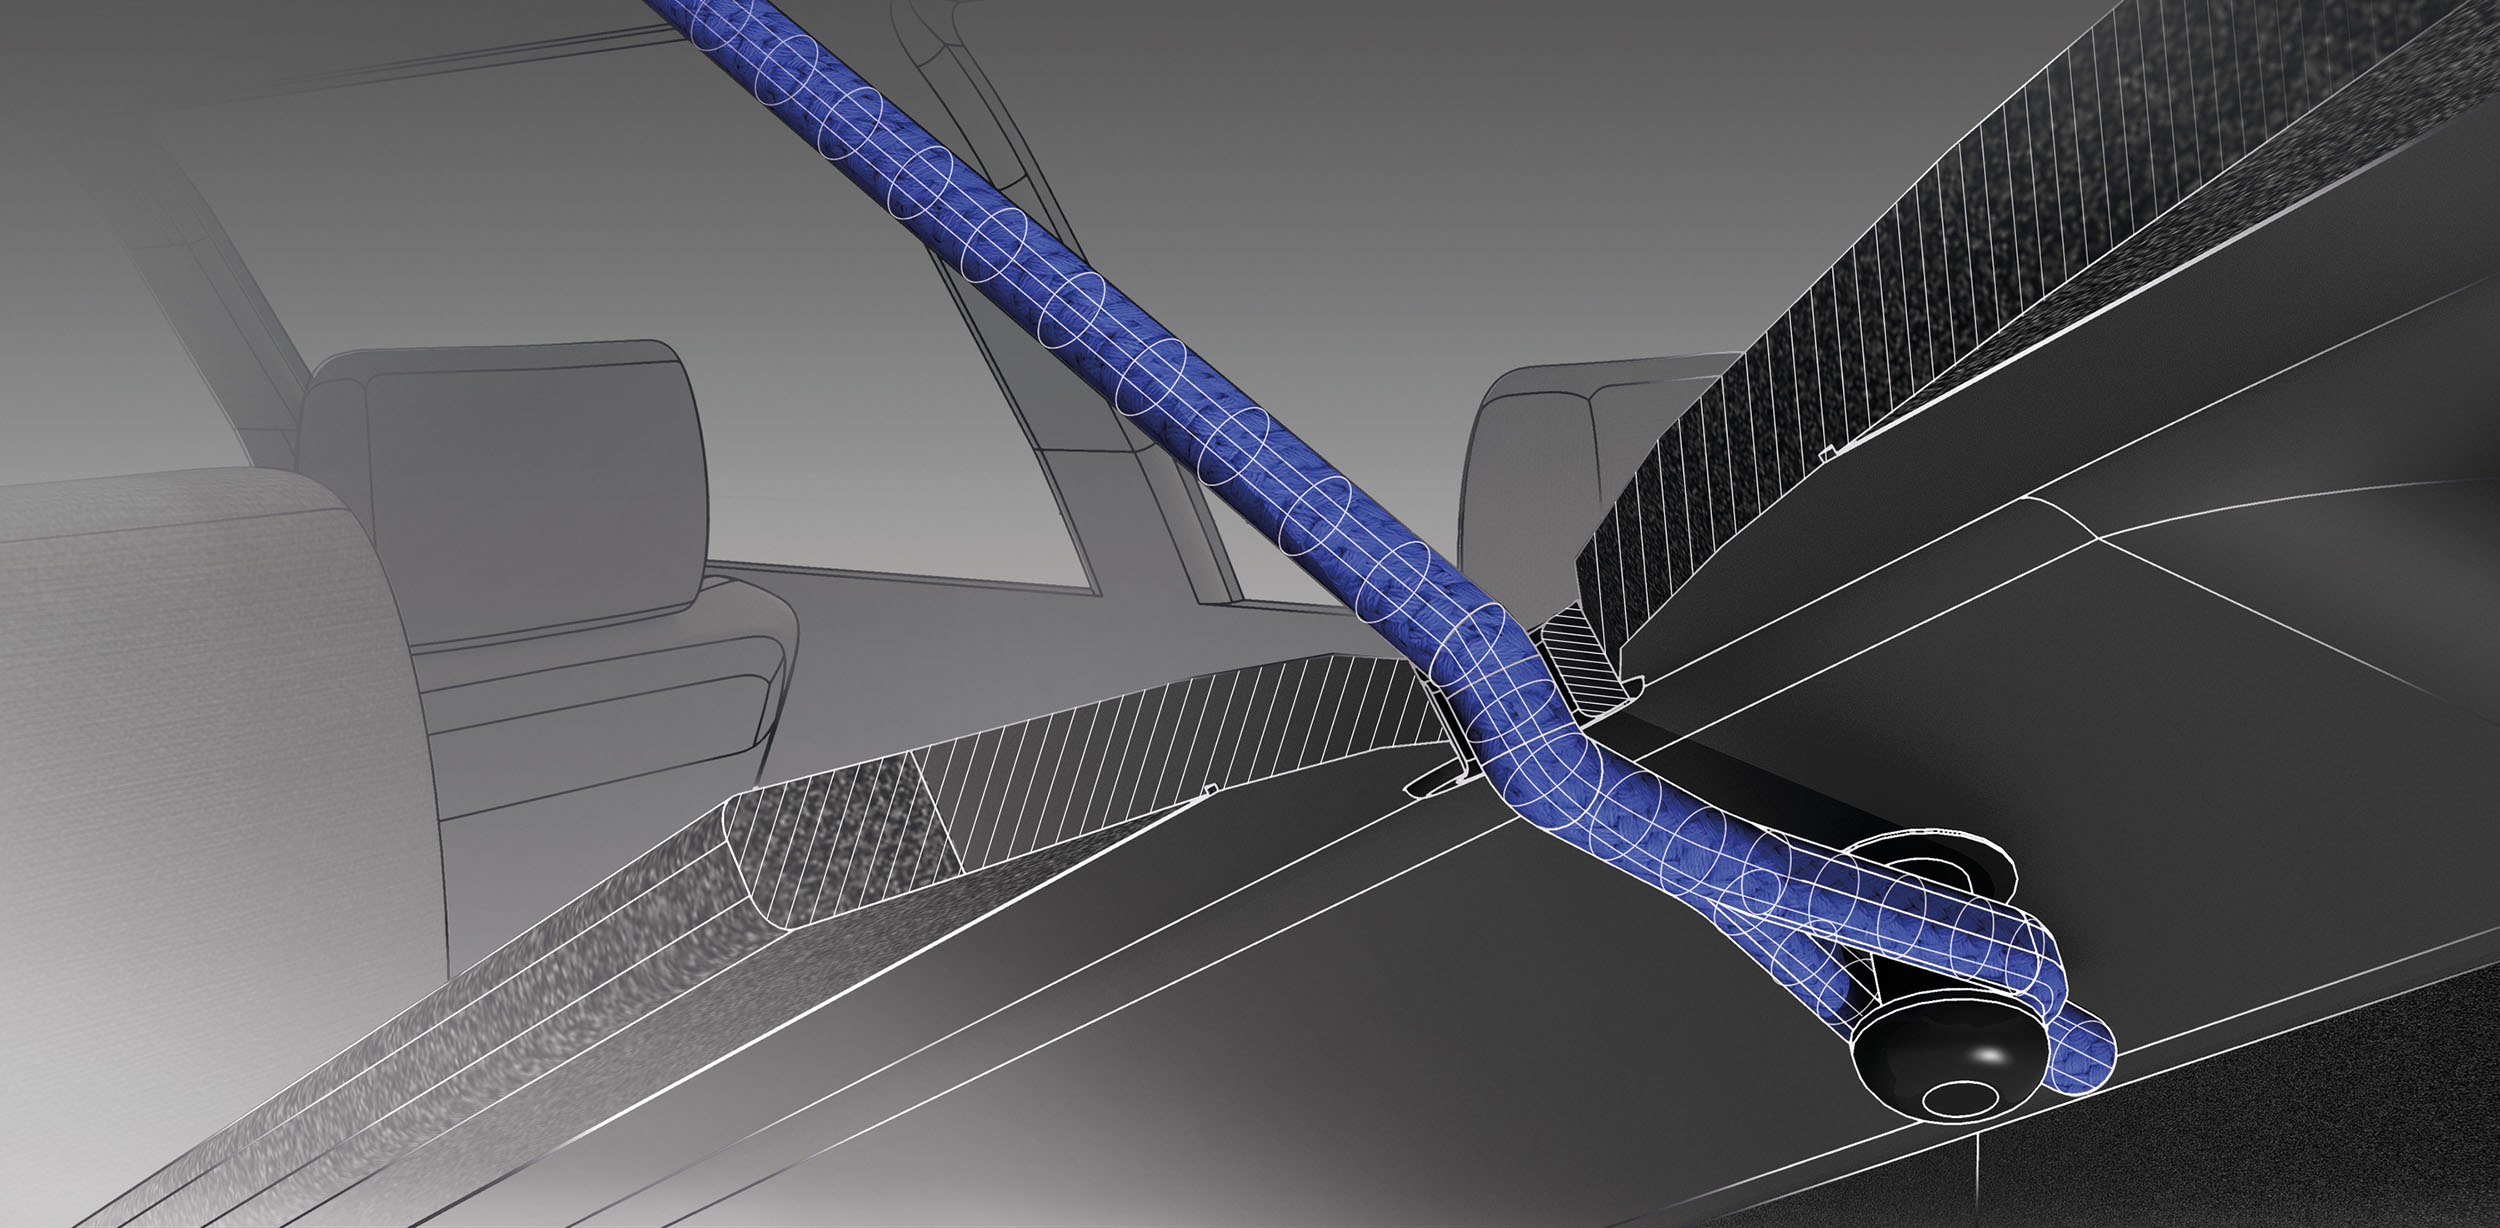 Lightweight Textile statt Heavy Metal: Technische Illustration einer Lochkordel zur Illustration von Aufbau und Funktionsweise, verbaut in einer Hutablage eines Autos